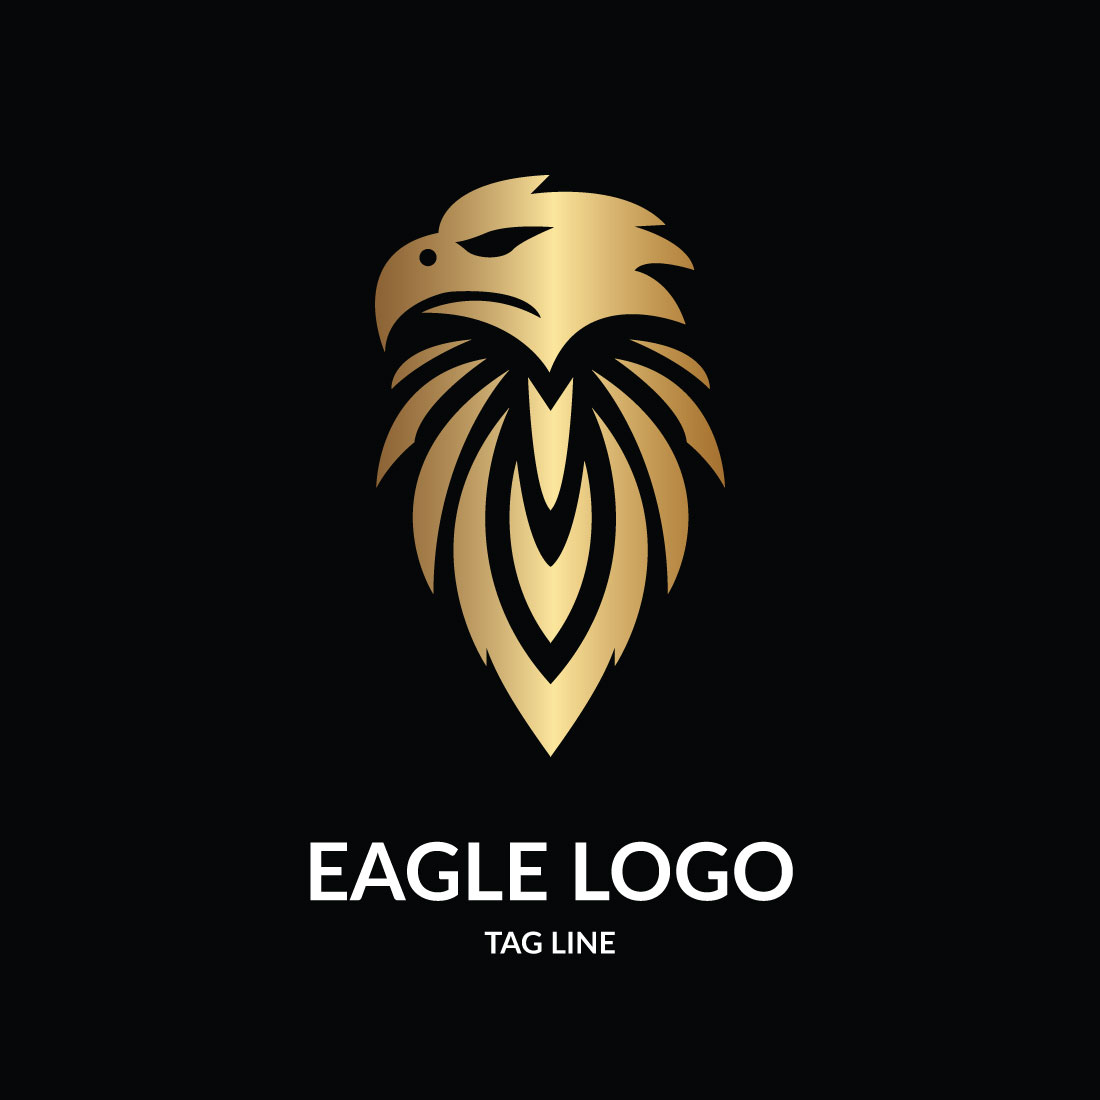 Eagle Head Logo Template cover image.